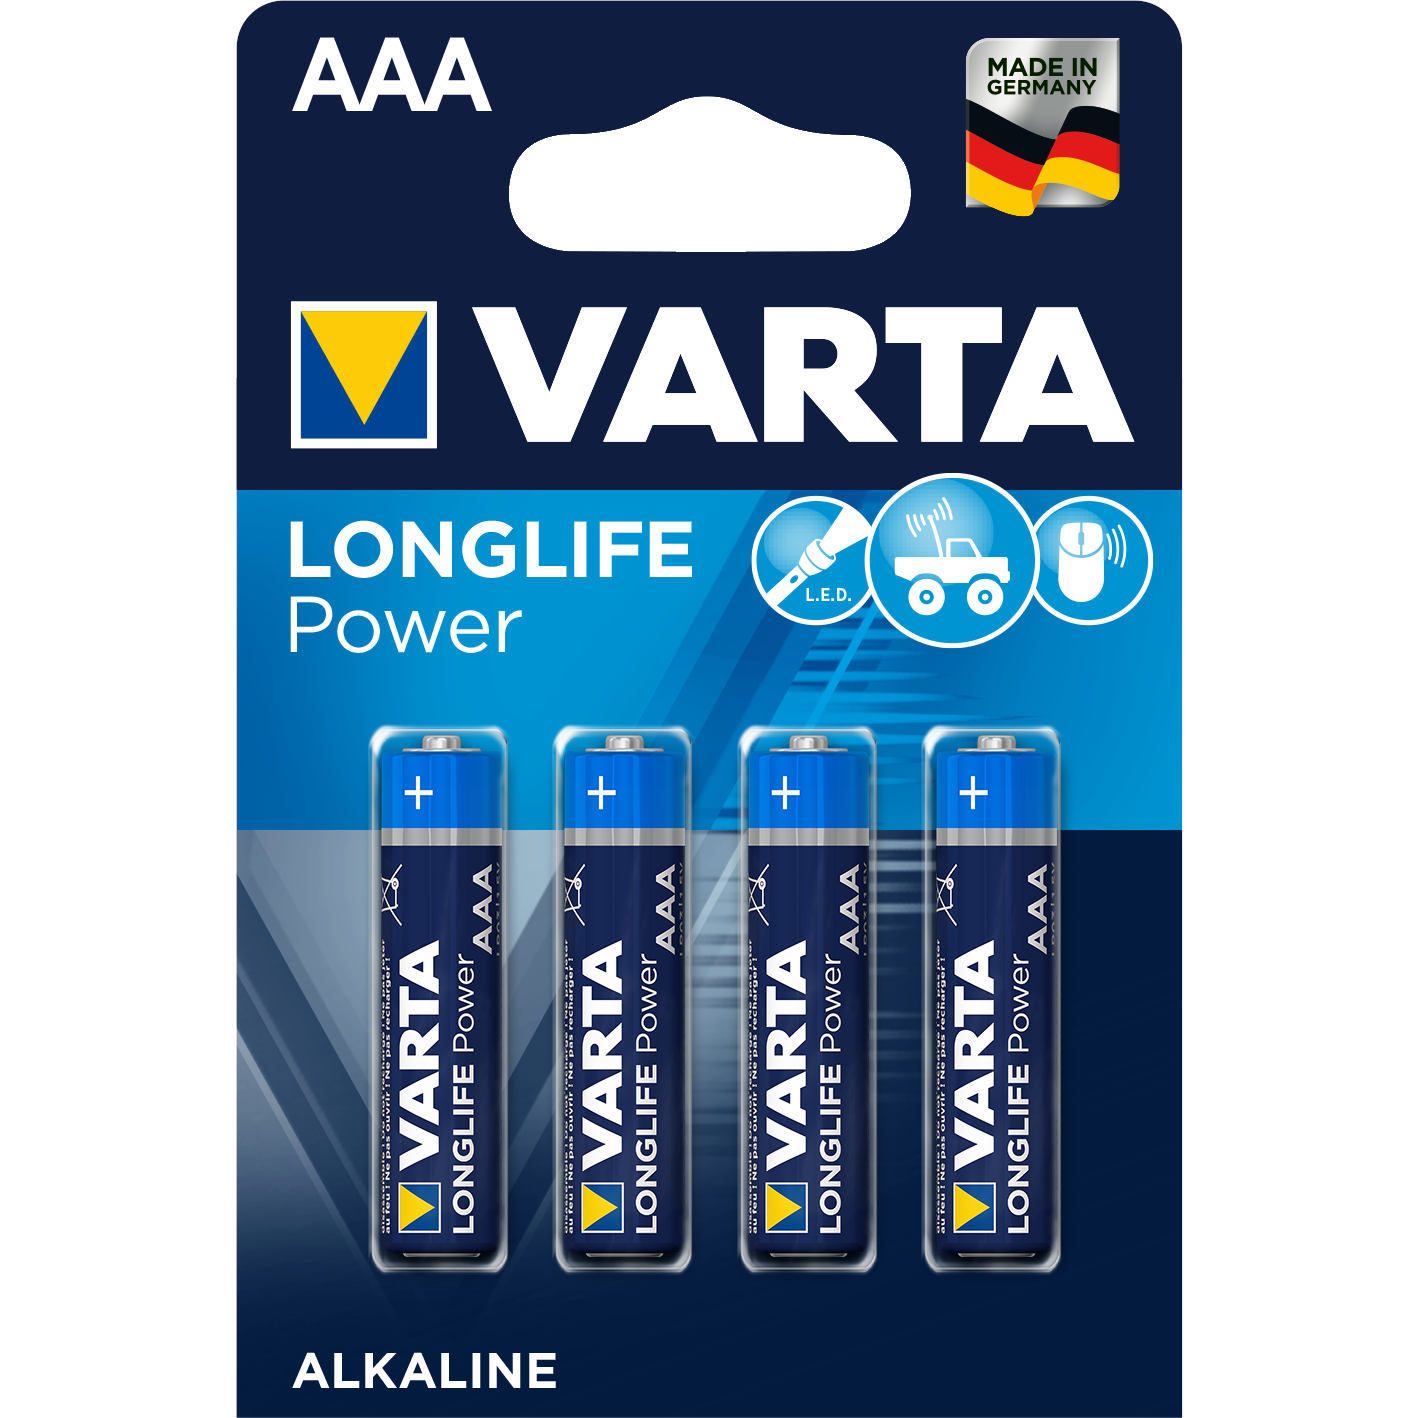 Varta Longlife Power Alk AAA 4 st